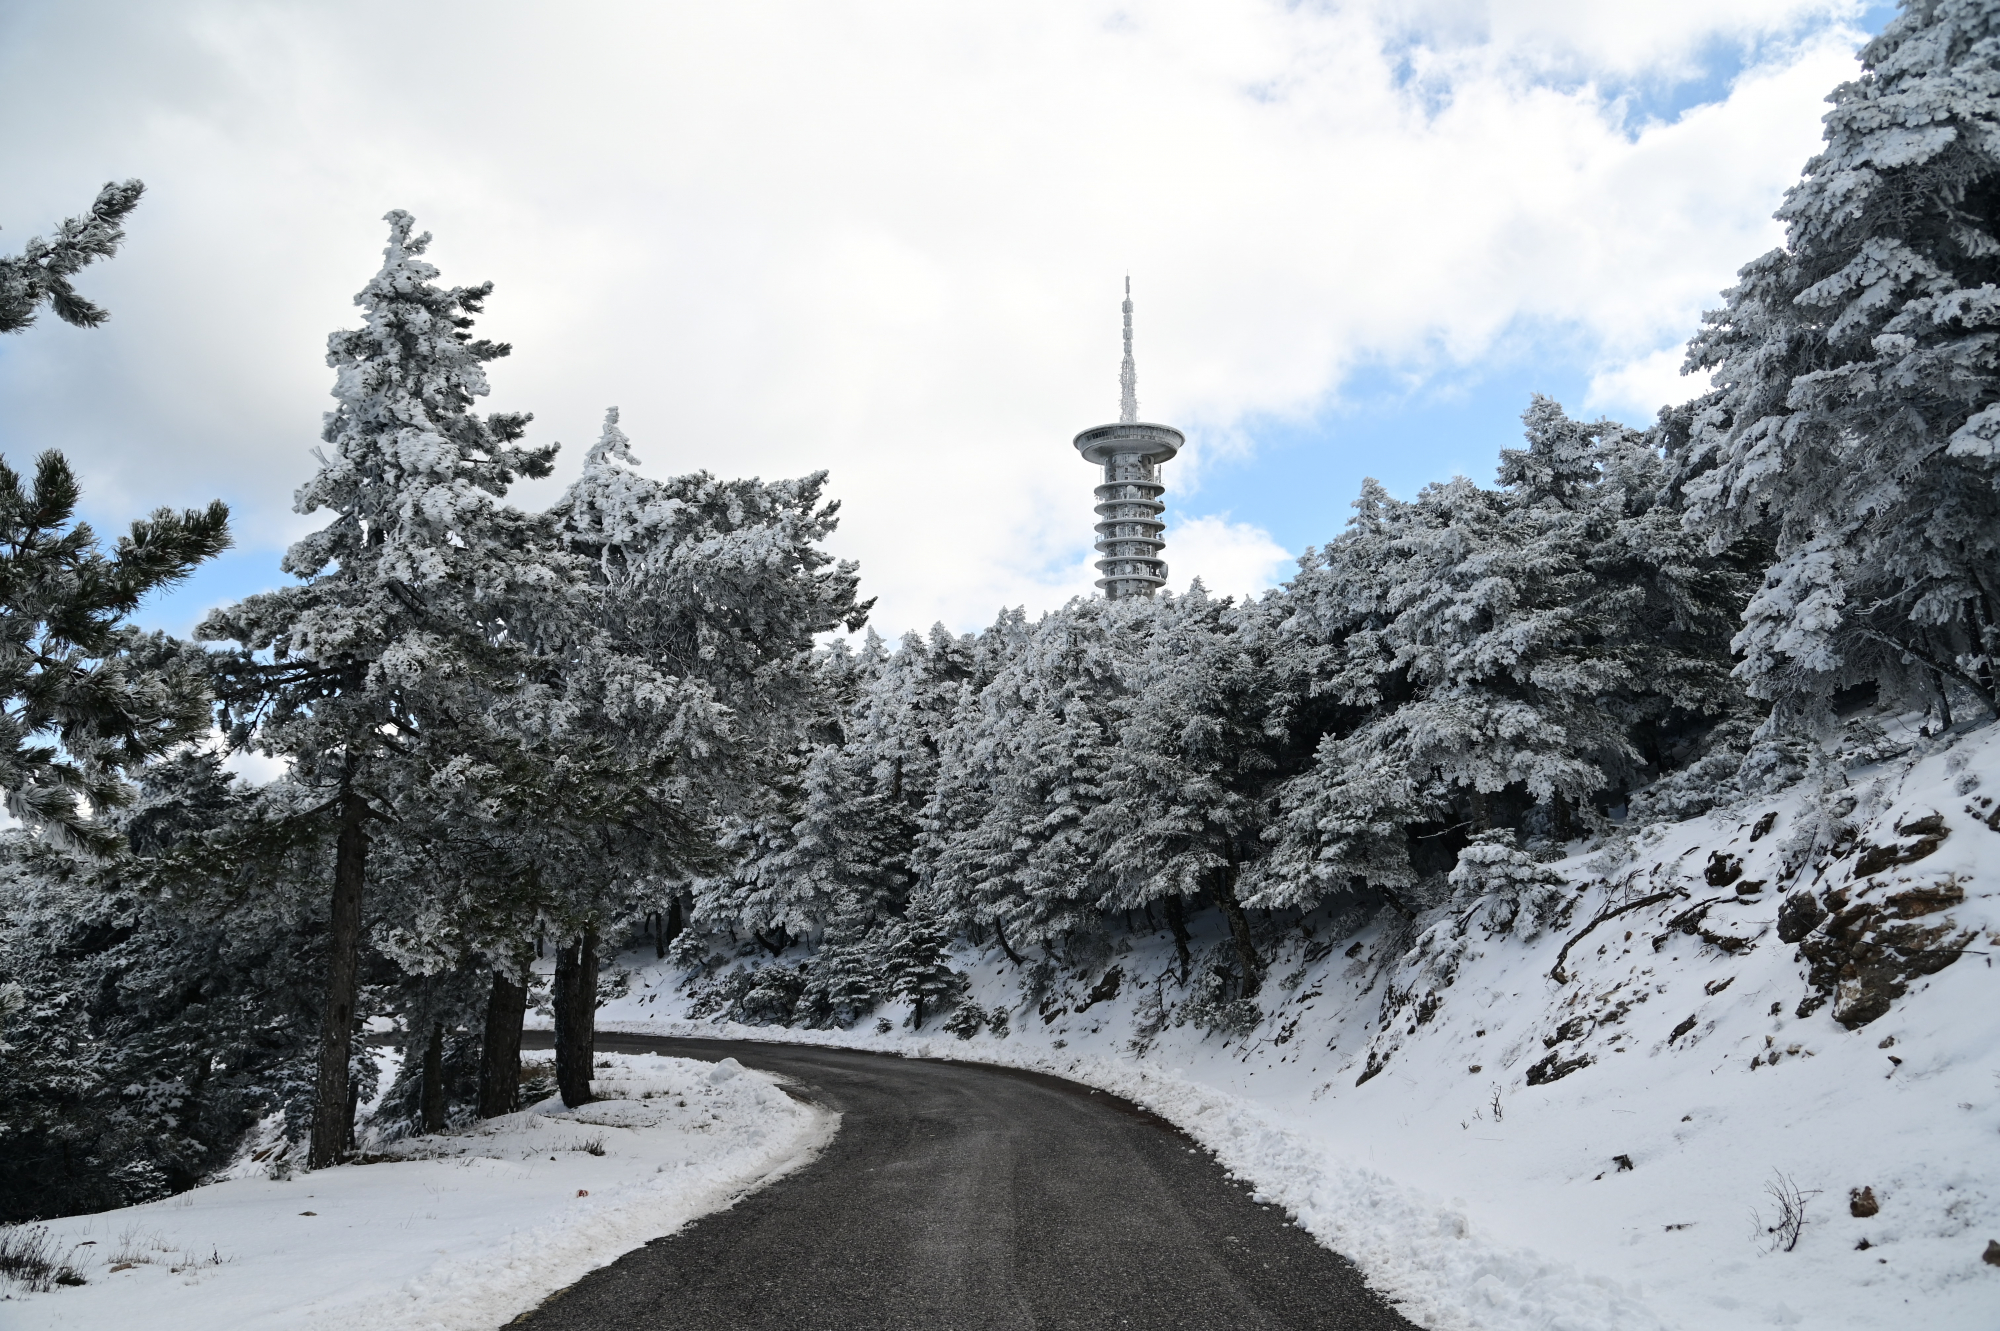 Κακοκαιρία «Μπάρμπαρα»: Δύσκολο τριήμερο με χιονοκαταιγίδες και πολικές θερμοκρασίες - Ποιες περιοχές της Αθήνας θα ντυθούν στα λευκά